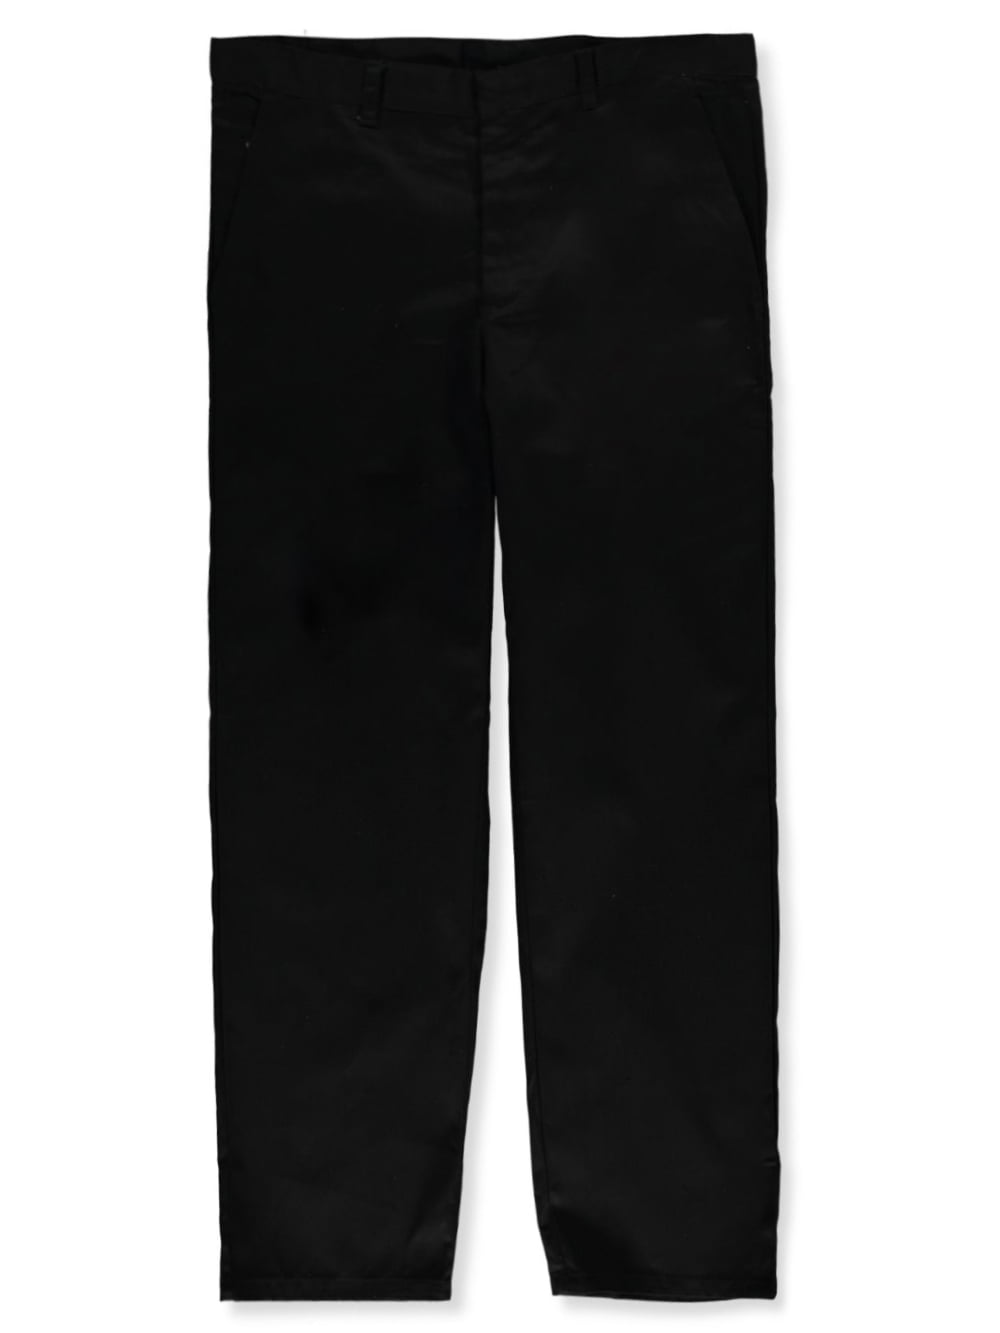 Denice Husky Boys' Flat Front Adjustable Waist Pants - black, 18 husky ...